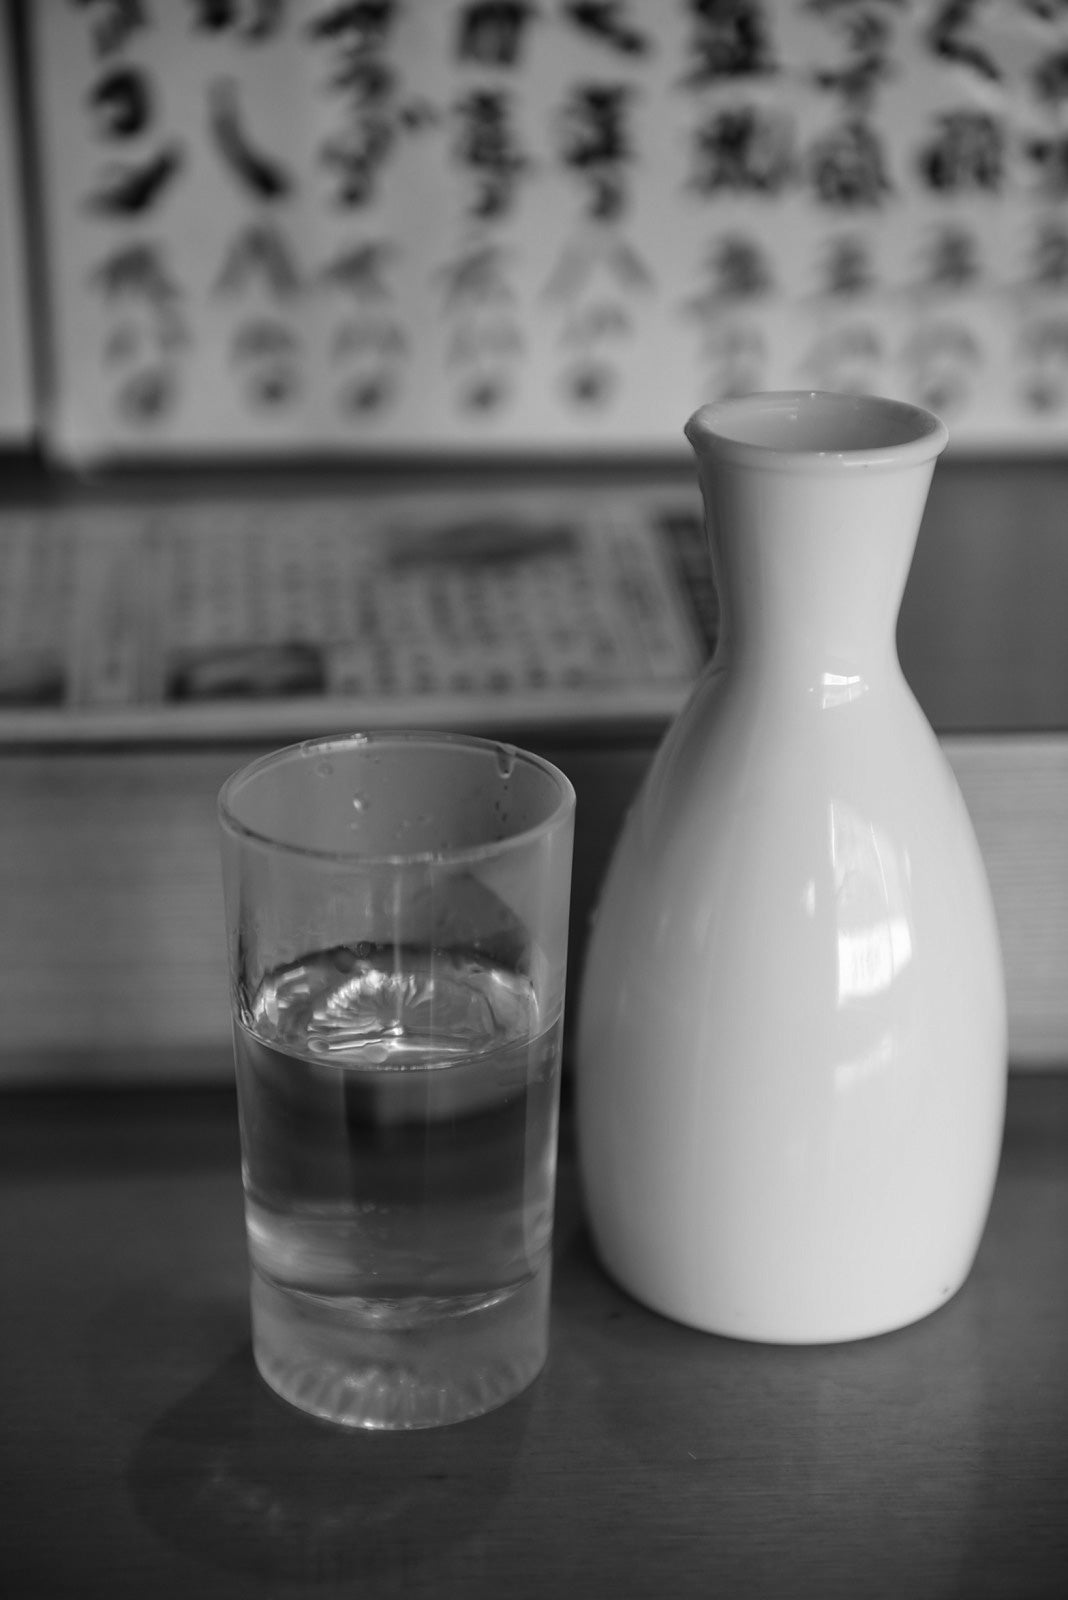 アルコール度数の高い日本酒